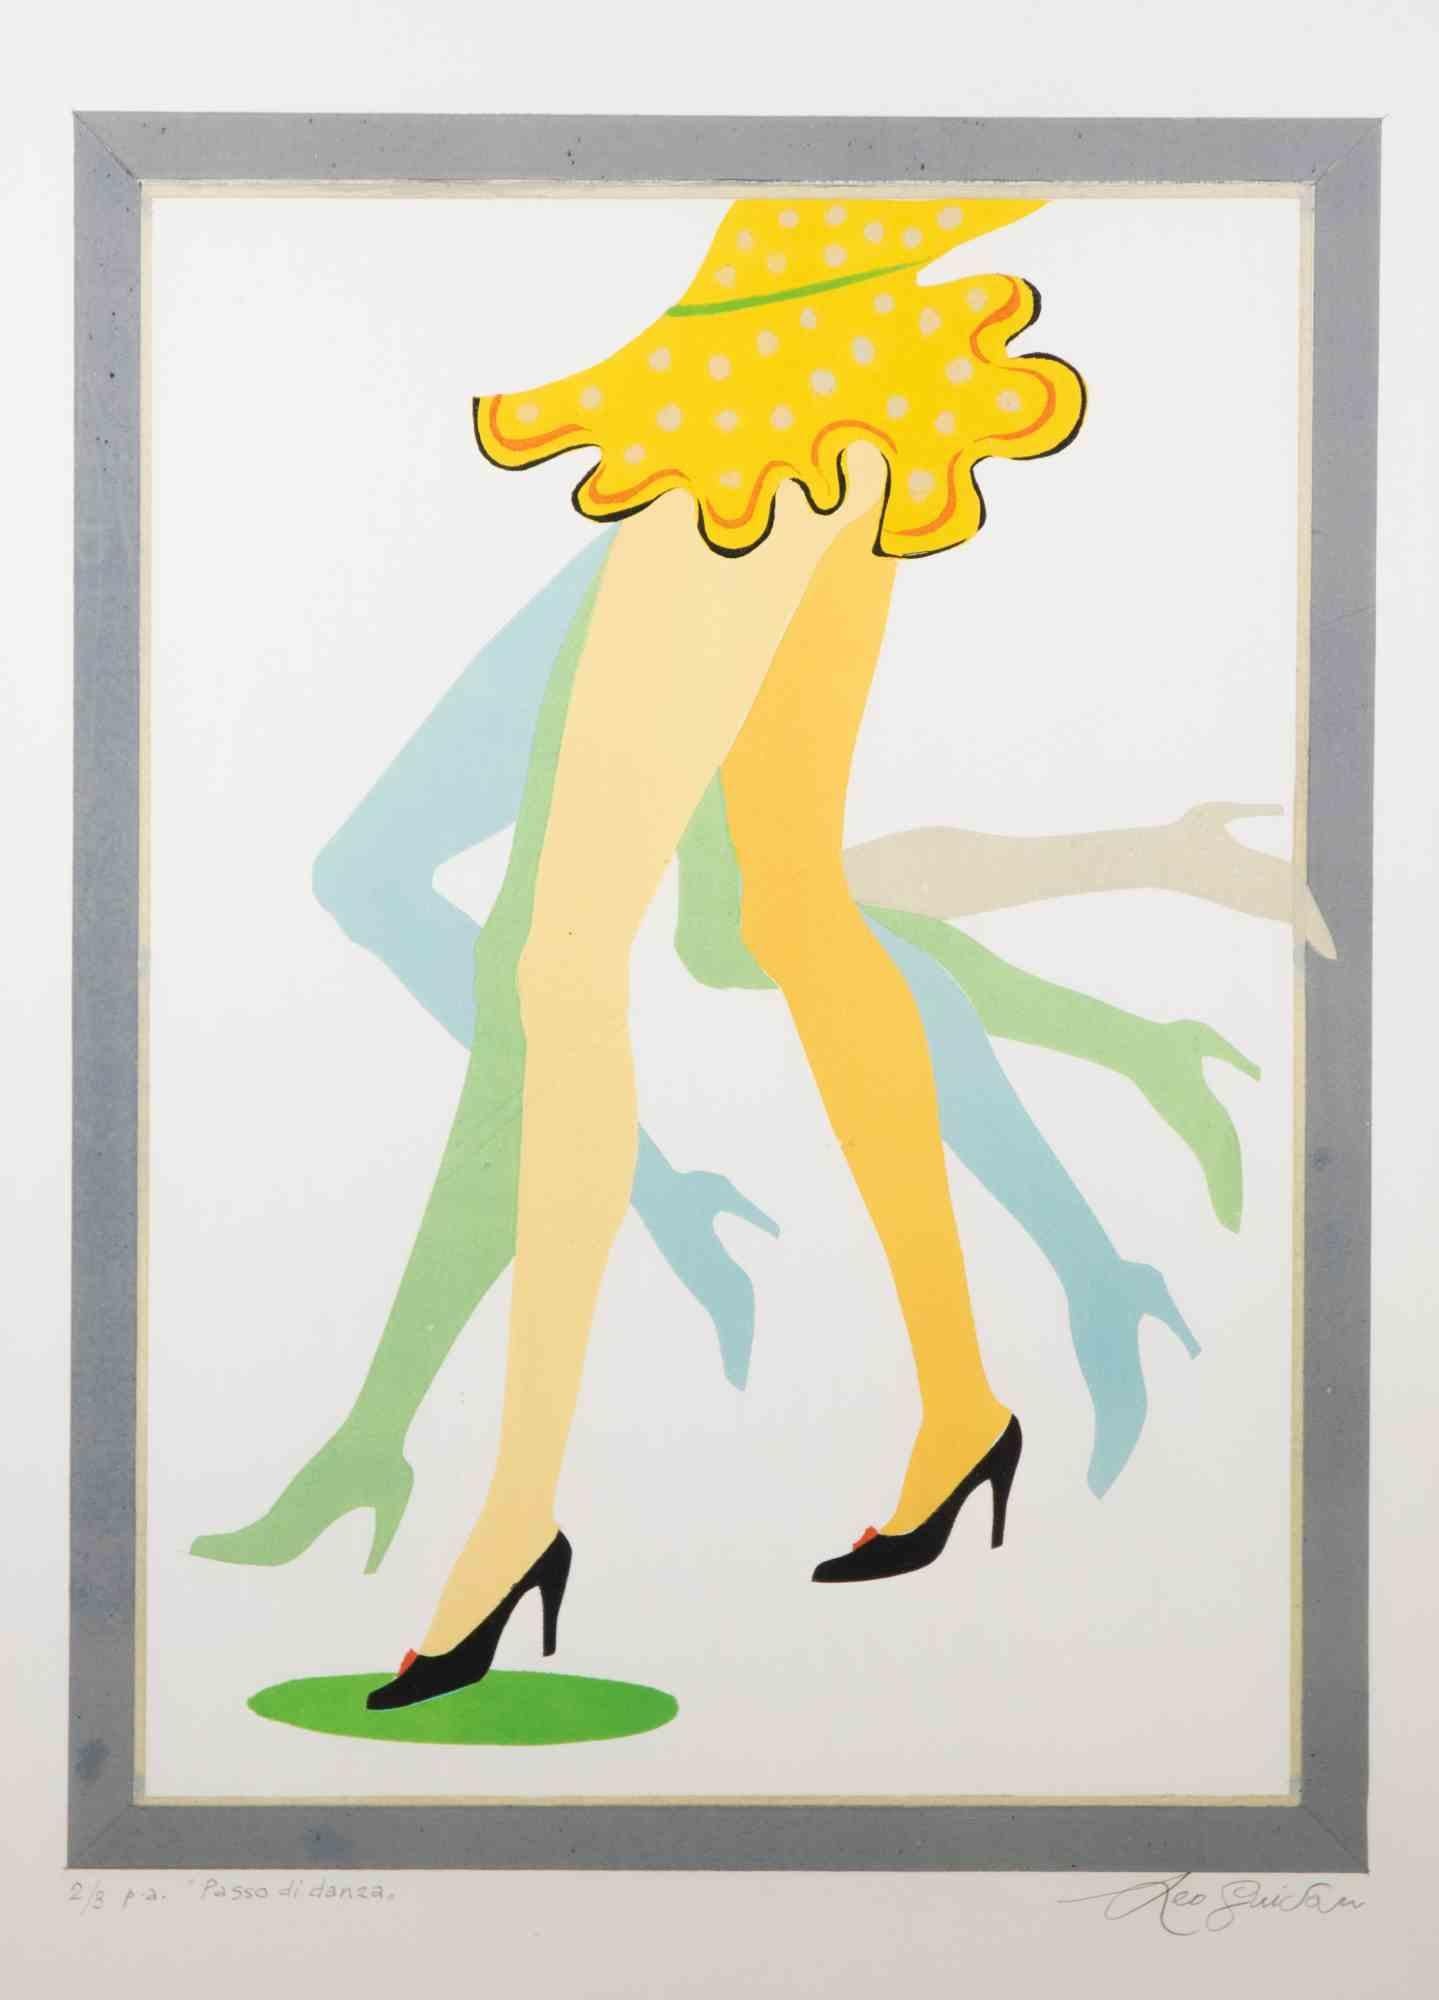 Dance Step ist ein zeitgenössisches Kunstwerk von Leo Guida aus dem Jahr 1975.

Gemischtfarbige Lithographie.

Am unteren Rand handsigniert, nummeriert und betitelt.

Originaltitel: Passo di danza

Auflage 2/3

Inklusive Rahmen

Leo Guida  (1992 -